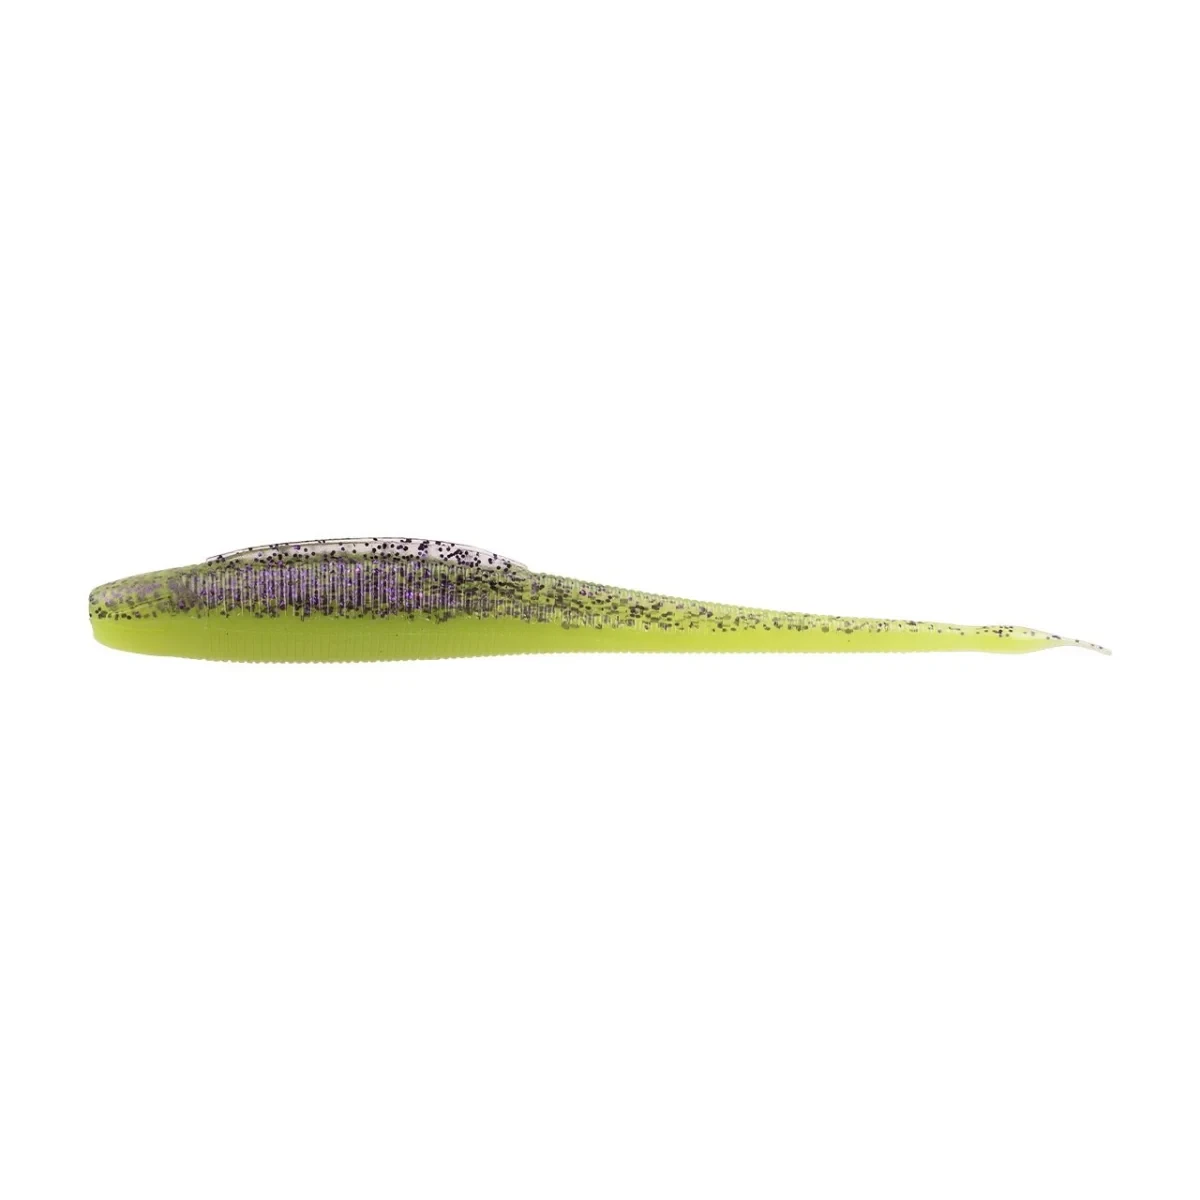 Zeck BA Shaky Stick von J.Dietel 12cm Purple Chartreuse